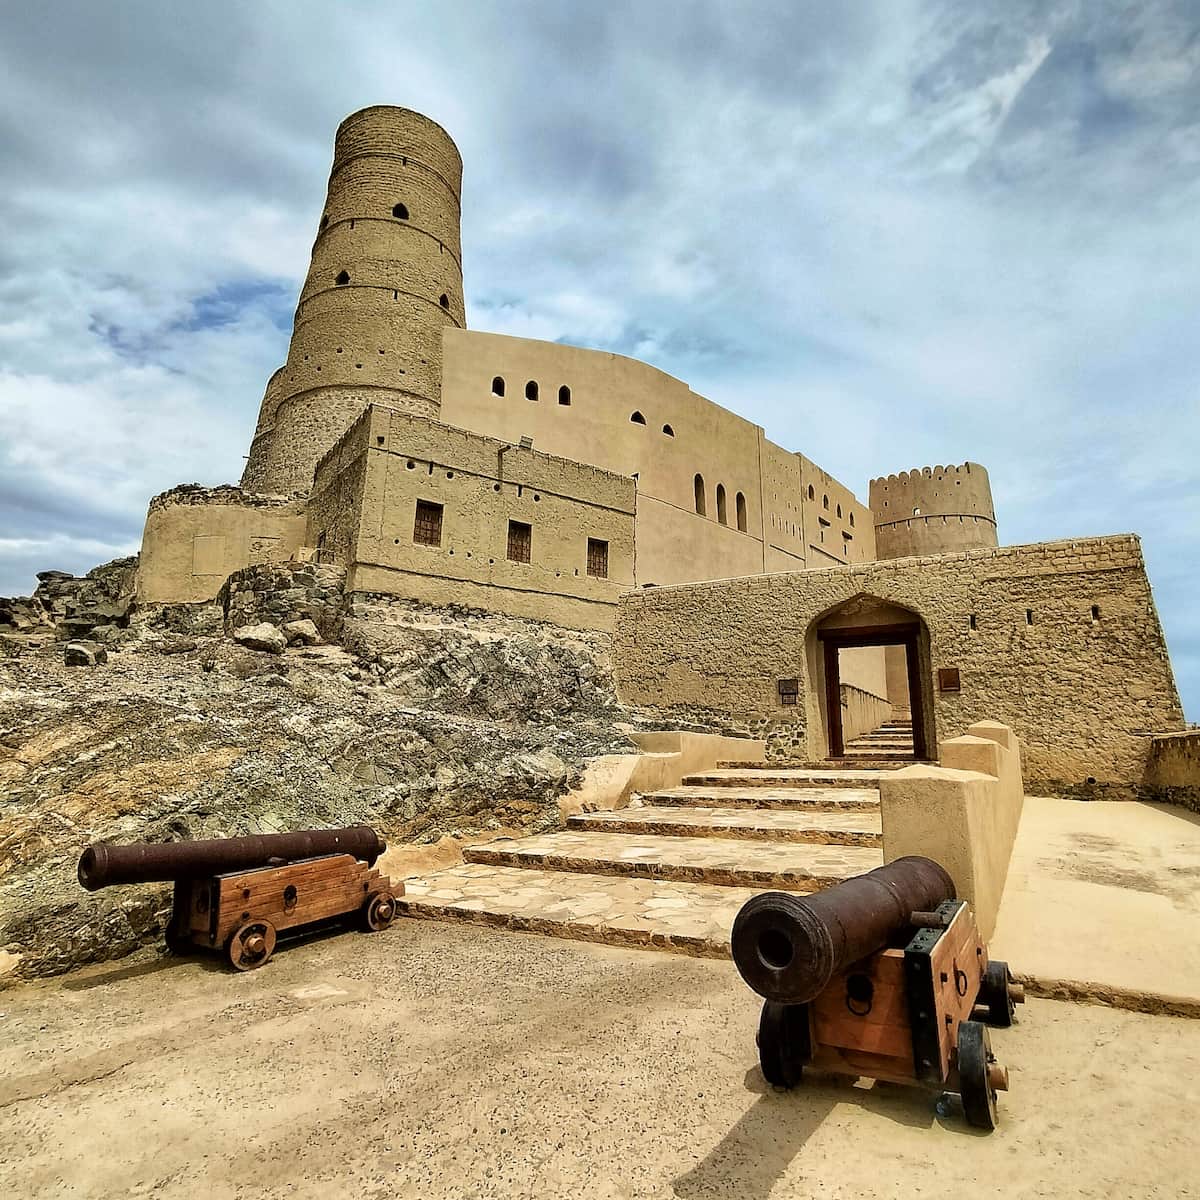 Le fort de Bahla, grand fort intéressant de l’extérieur, mais malheureusement aucun artefact à l’intérieur.